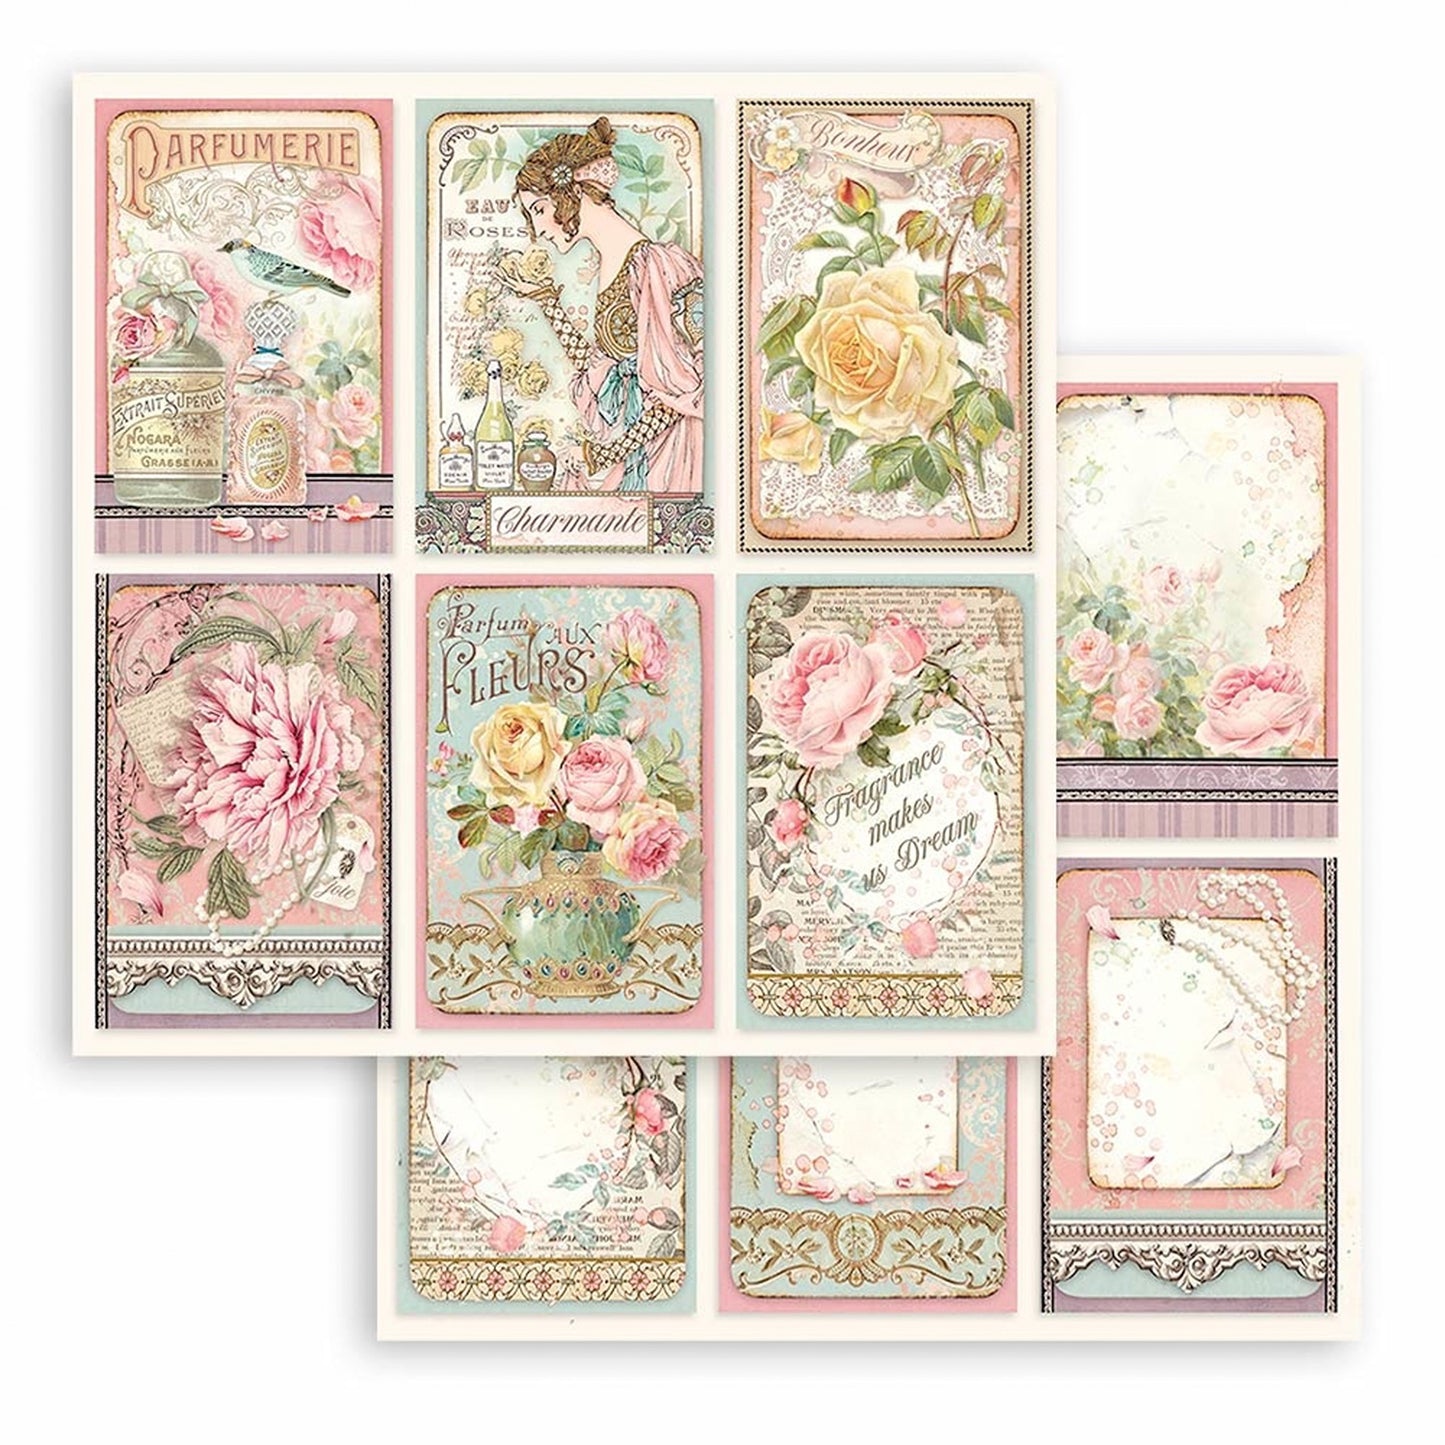 Stamperia - Coleccion 12 x 12 - Rose Parfum